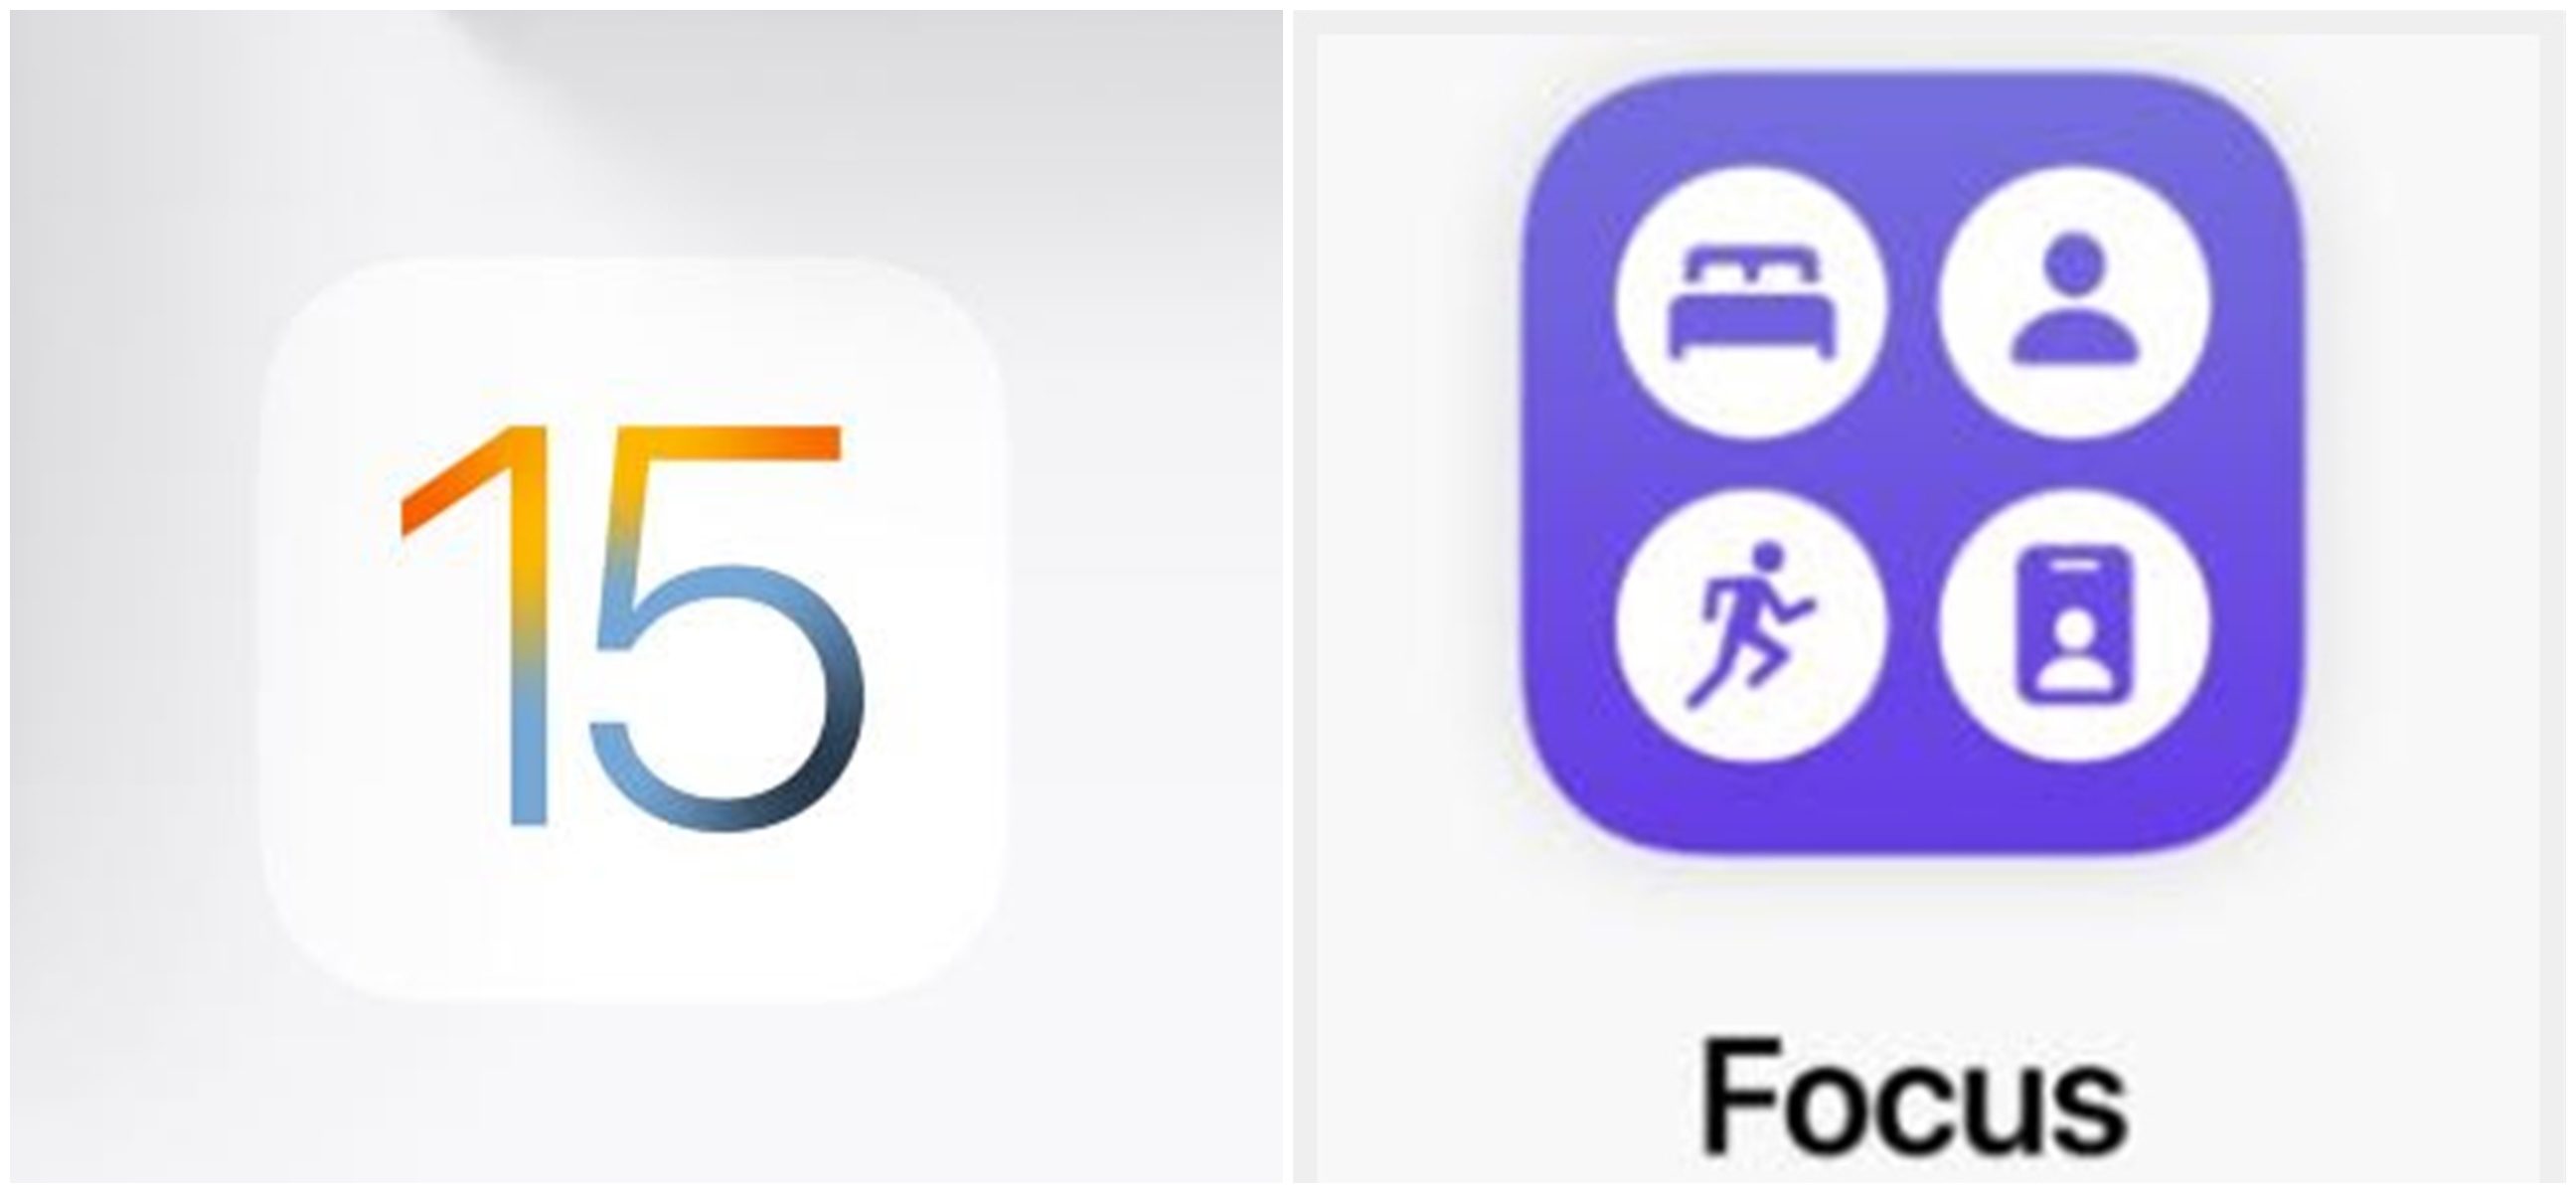 Fitur baru iOS 15 Focus bisa kurangi kebisingan, ini cara mengaktifkan